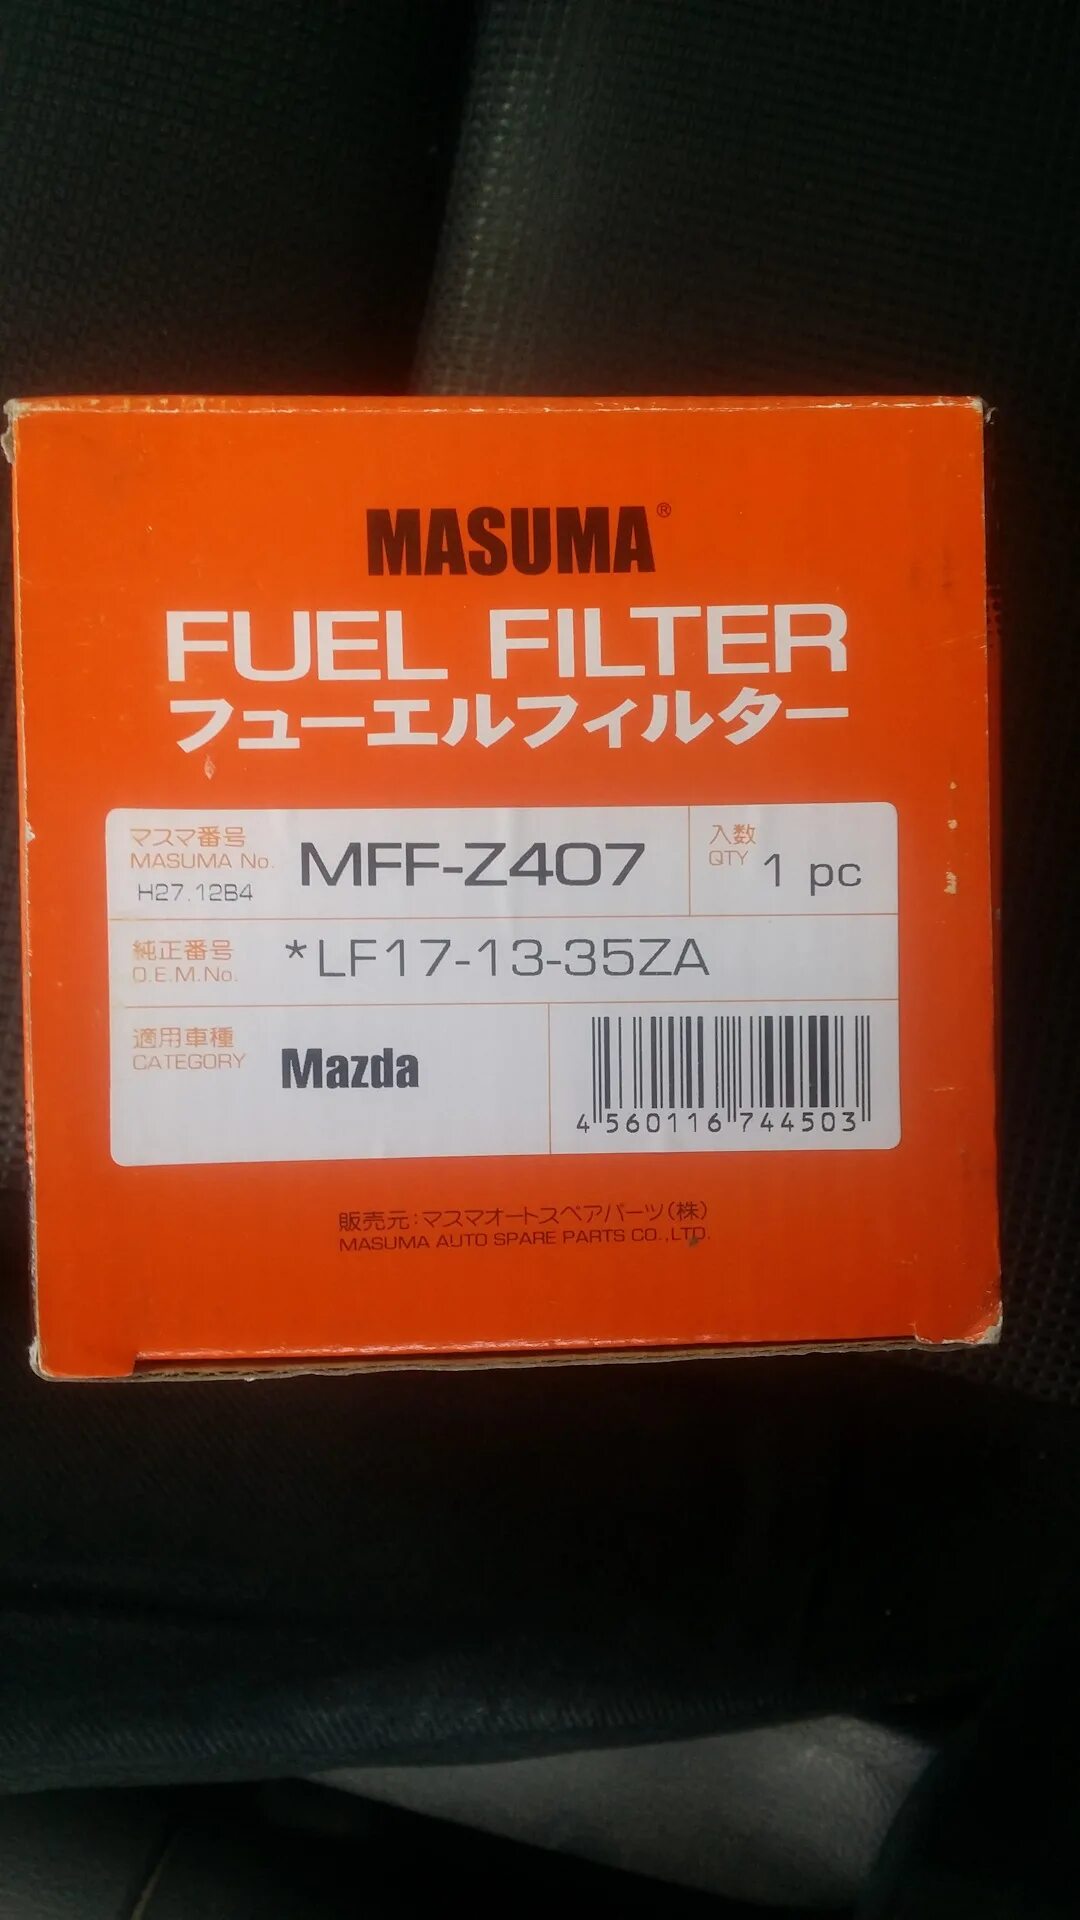 Фильтр мазда 6 2.0. Топливный фильтр CBR 600f4i Масума. Масляный фильтр Масума Мазда 2. Фильтр топливный Masuma Fit 2. Топливный фильтр Мазда 6 GH Masuma.